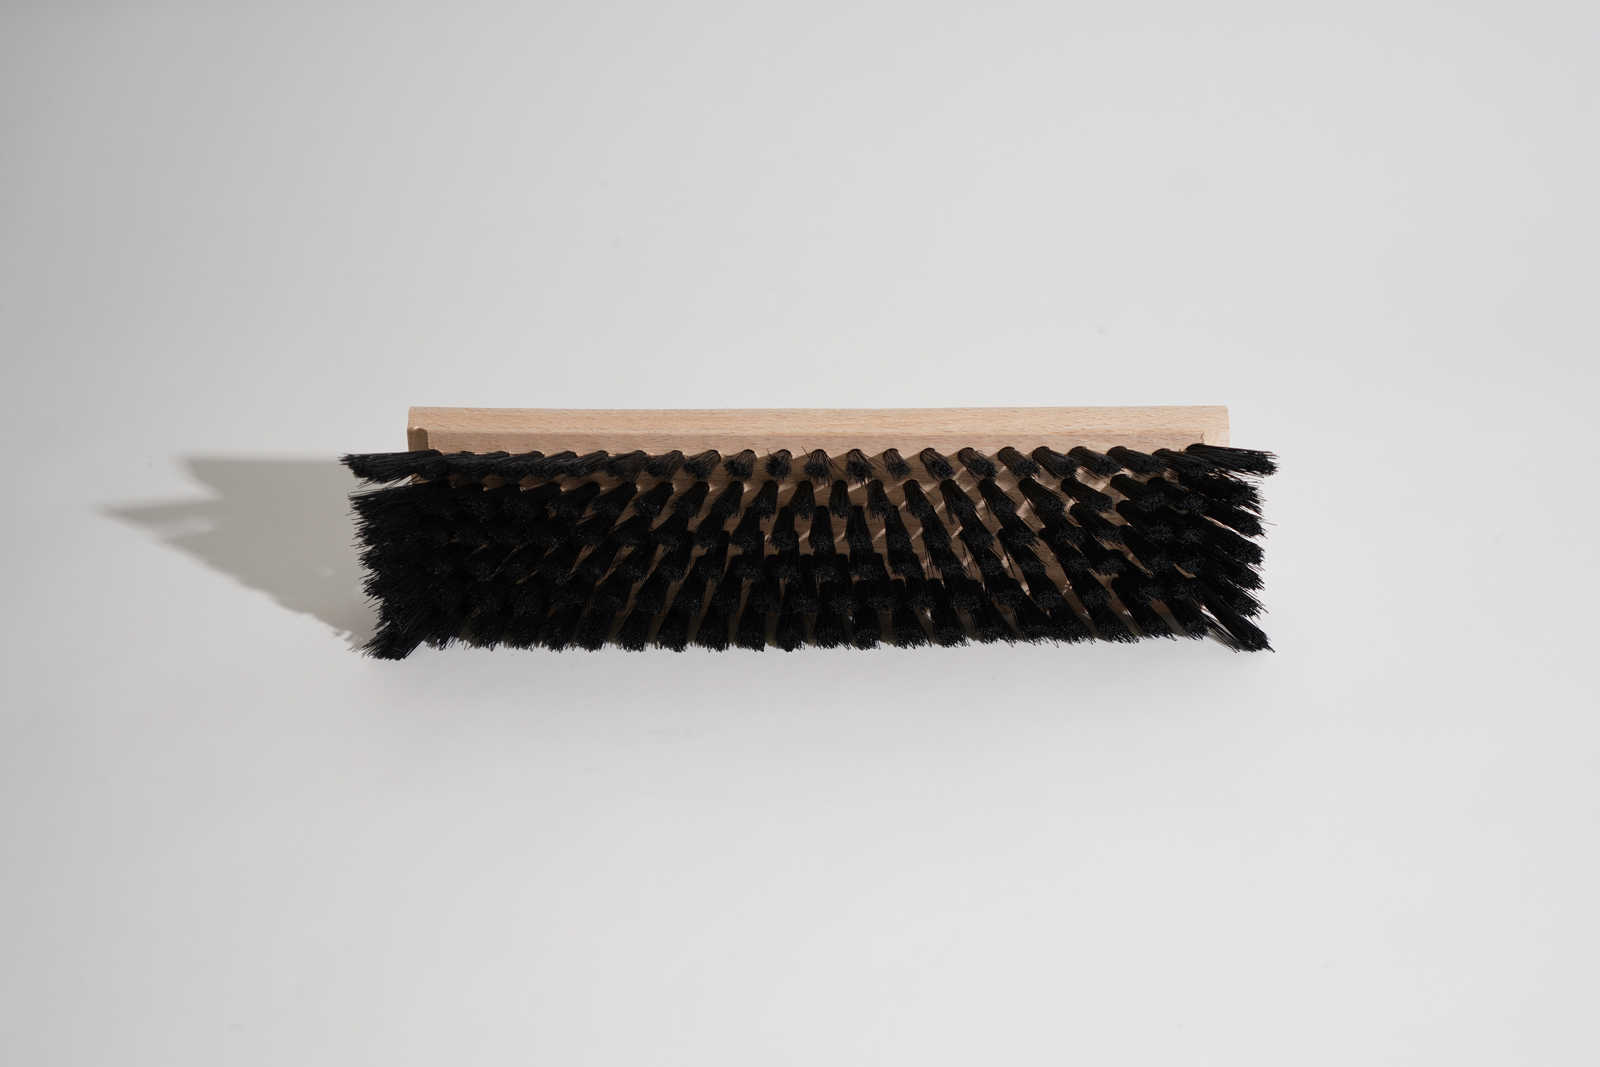             Behangersborstel 23,5cm x 6cm gemaakt van hout met synthetische haren
        